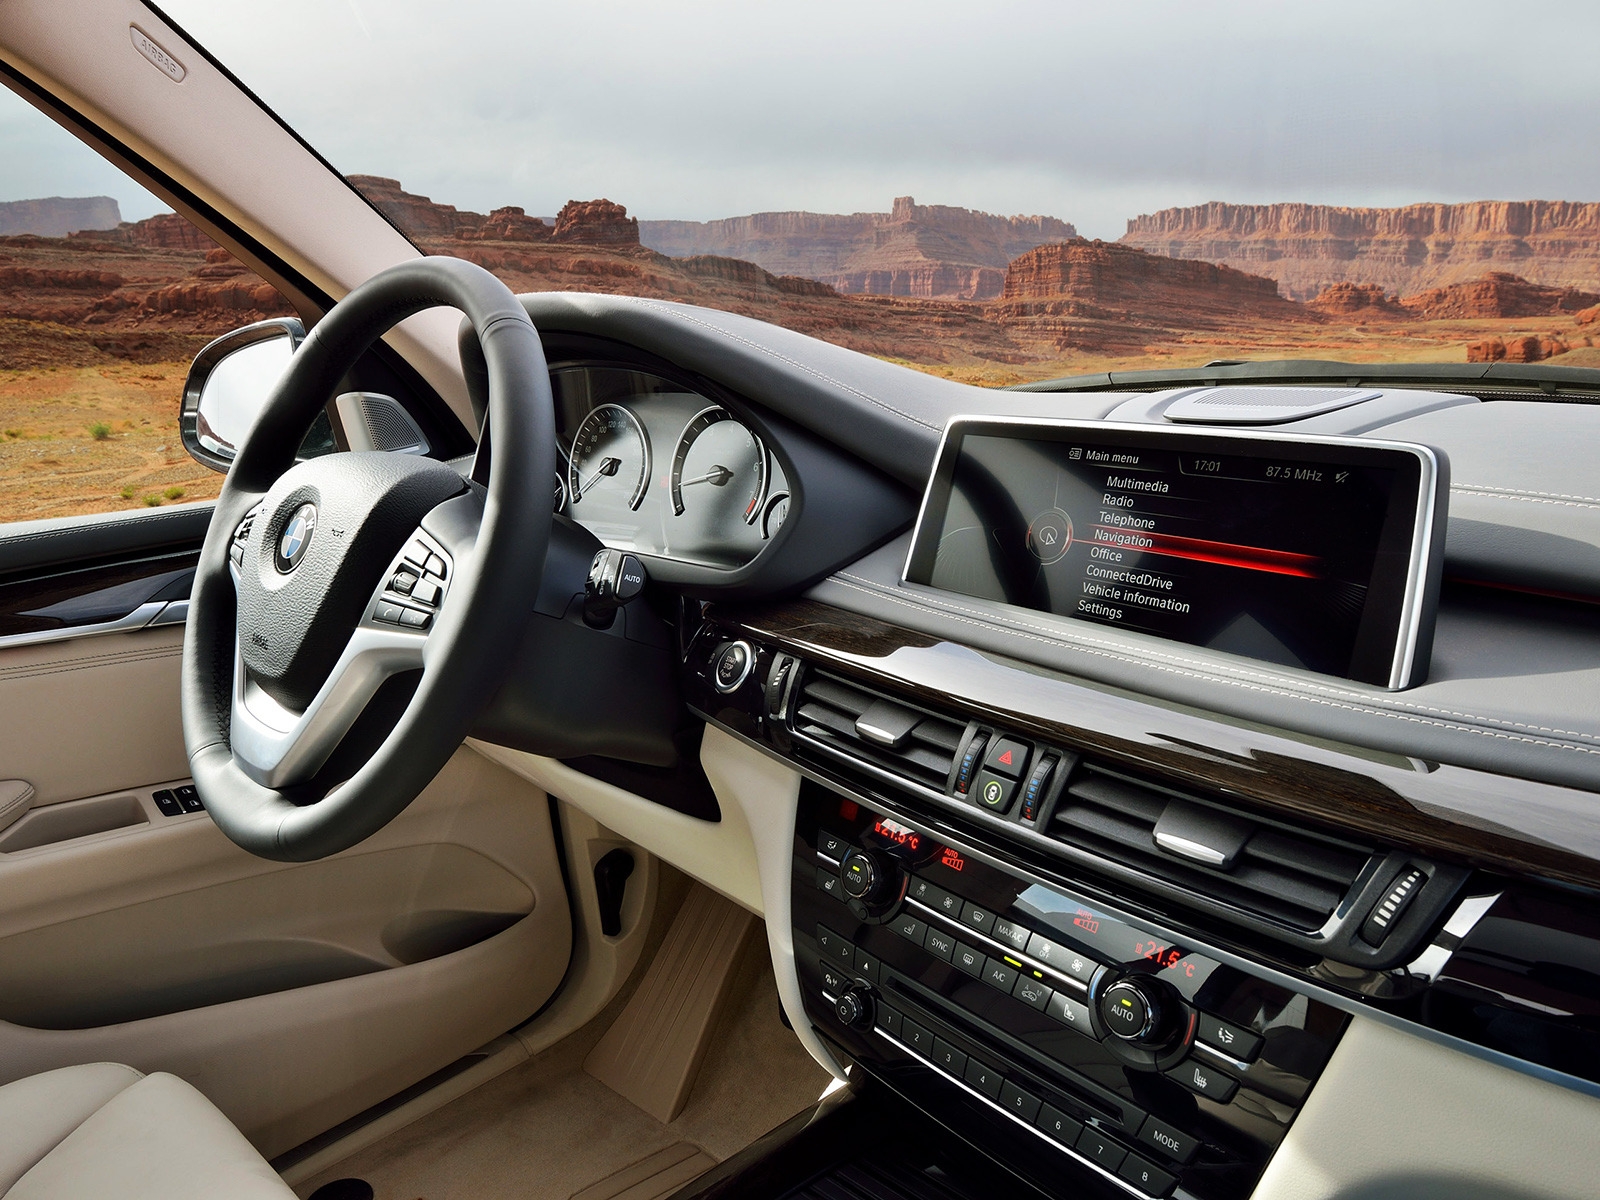 BMW X5 2014 Dashboard for 1600 x 1200 resolution